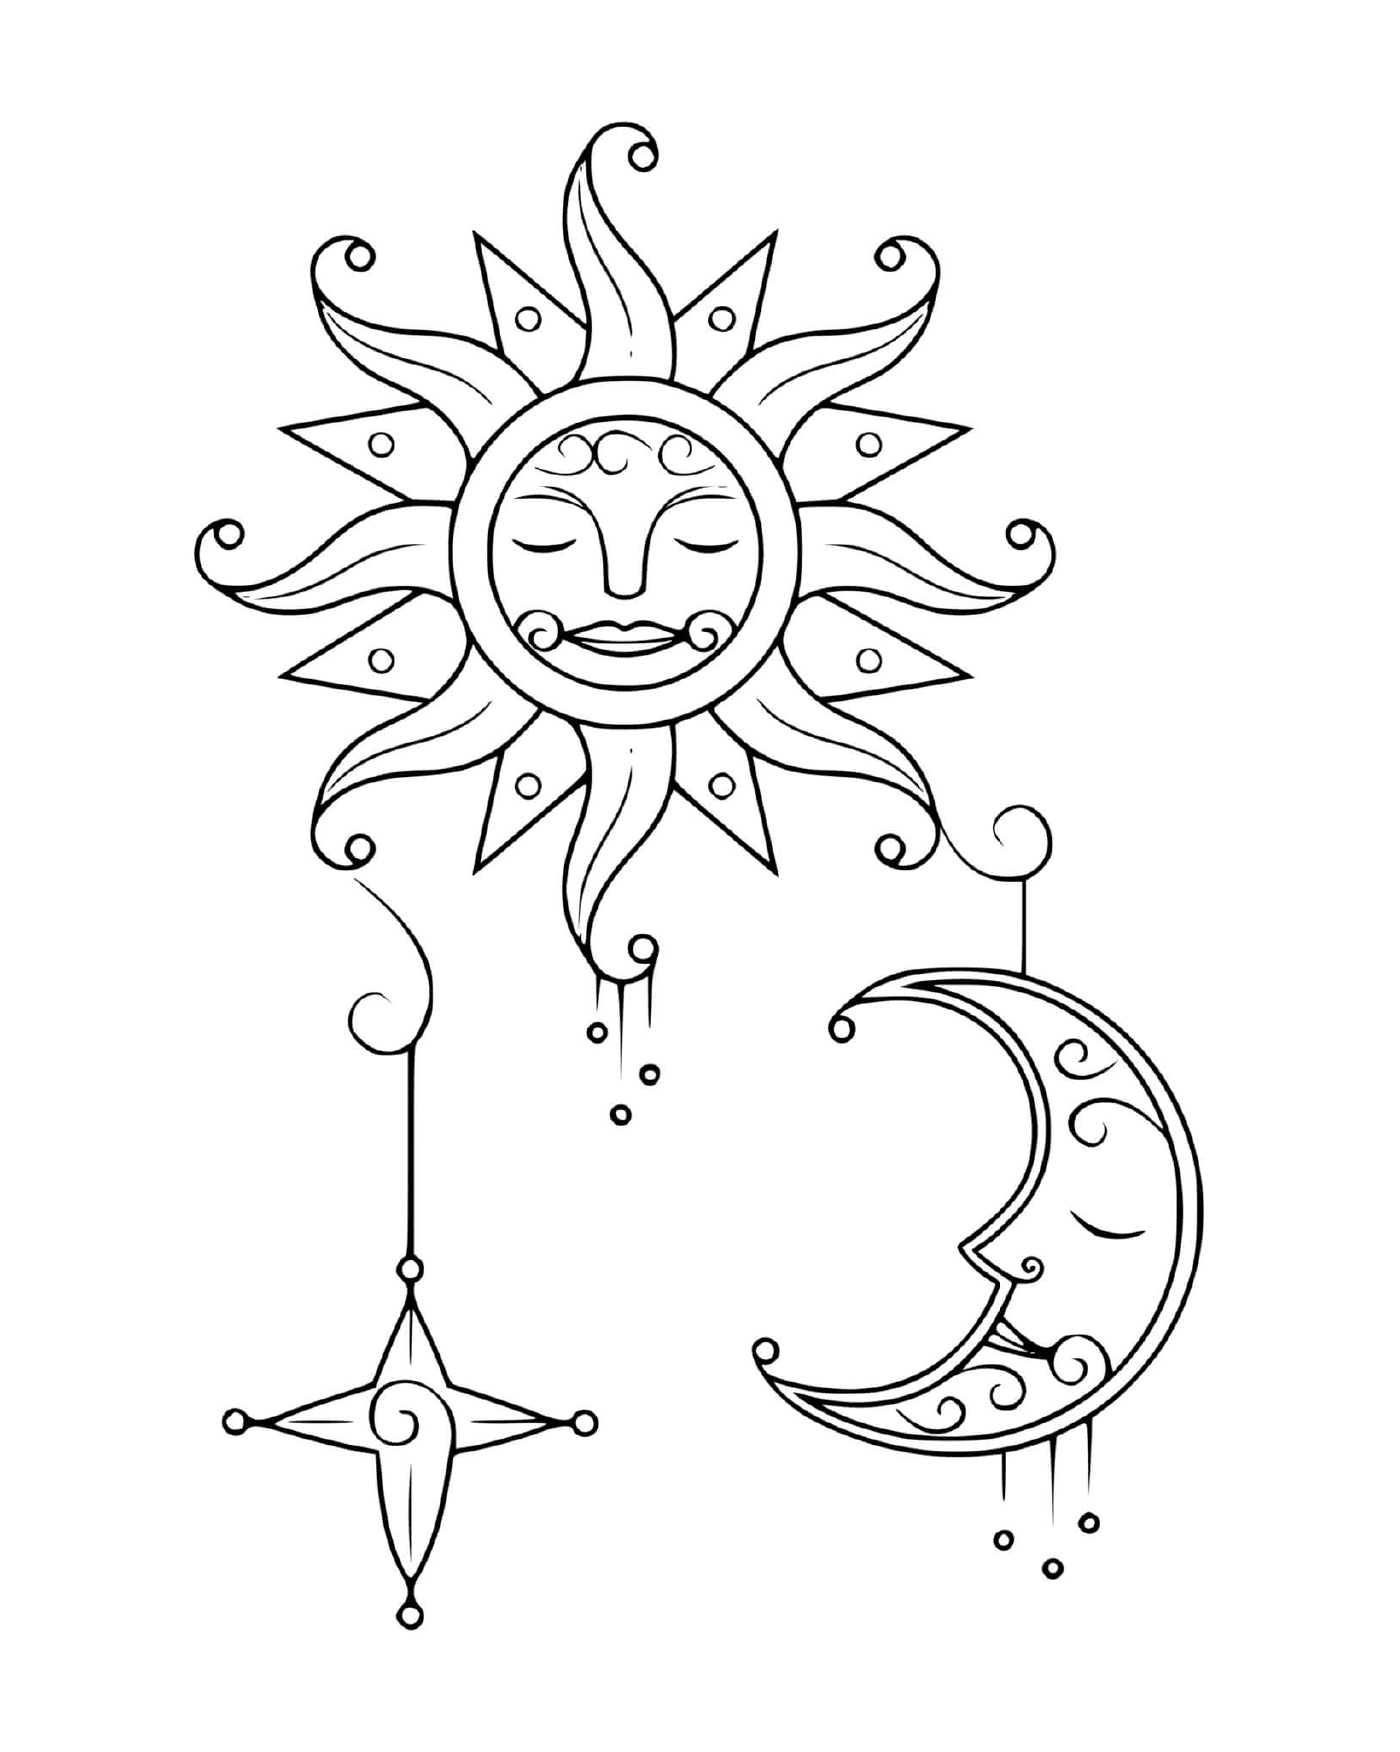   Soleil et lune 